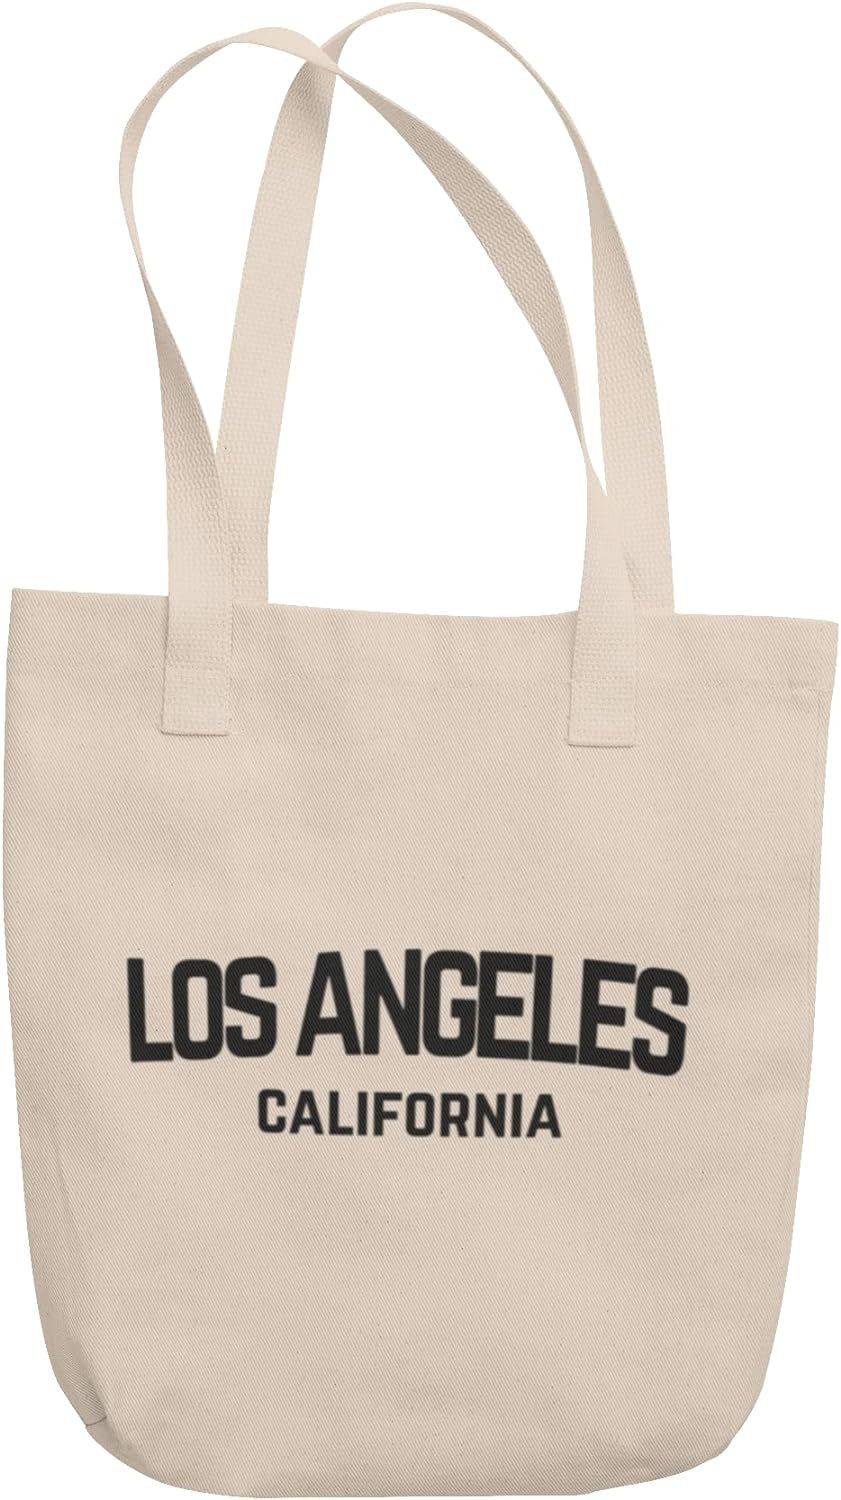 Los Angeles - Simple Tote Bag Vintage Style Retro California Cotton Canvas